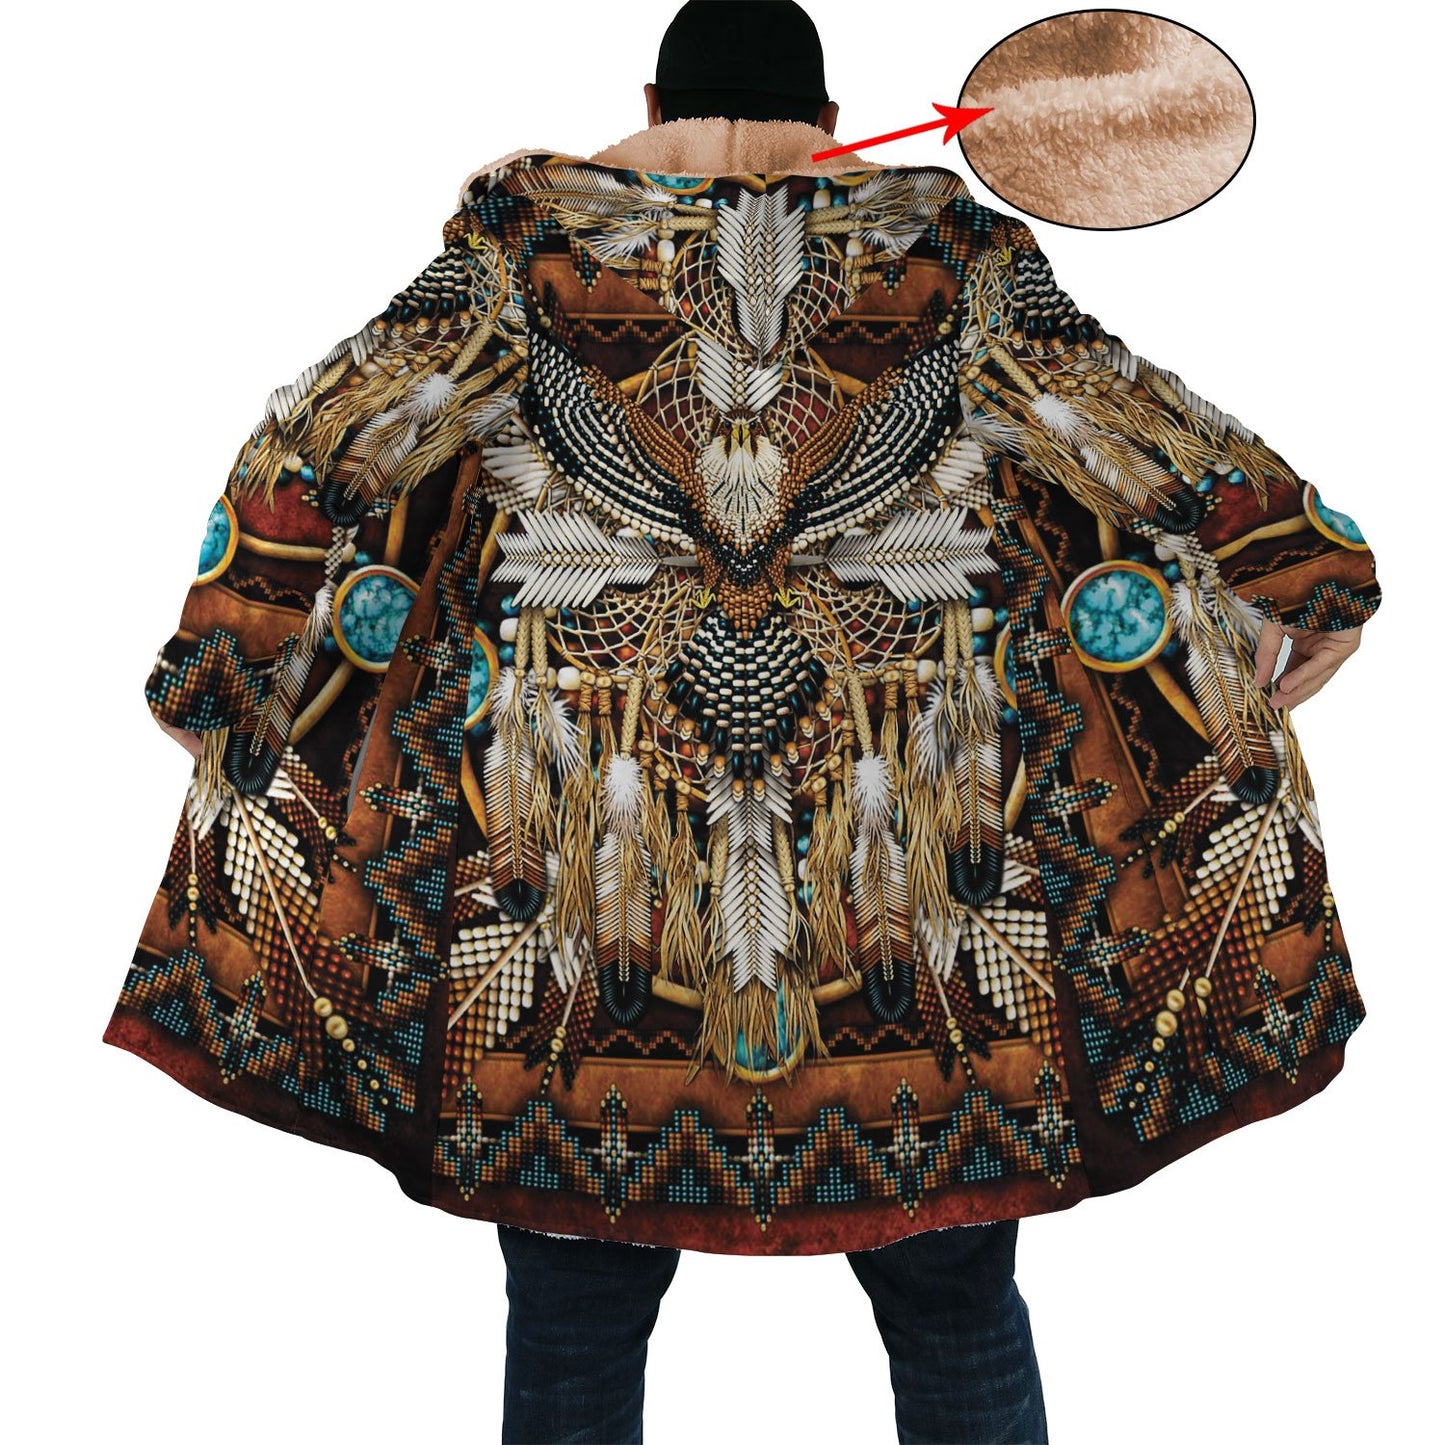 WelcomeNative Amazing Feather Native 3D Dream Cloak, All Over Print Dream Cloak, Native American